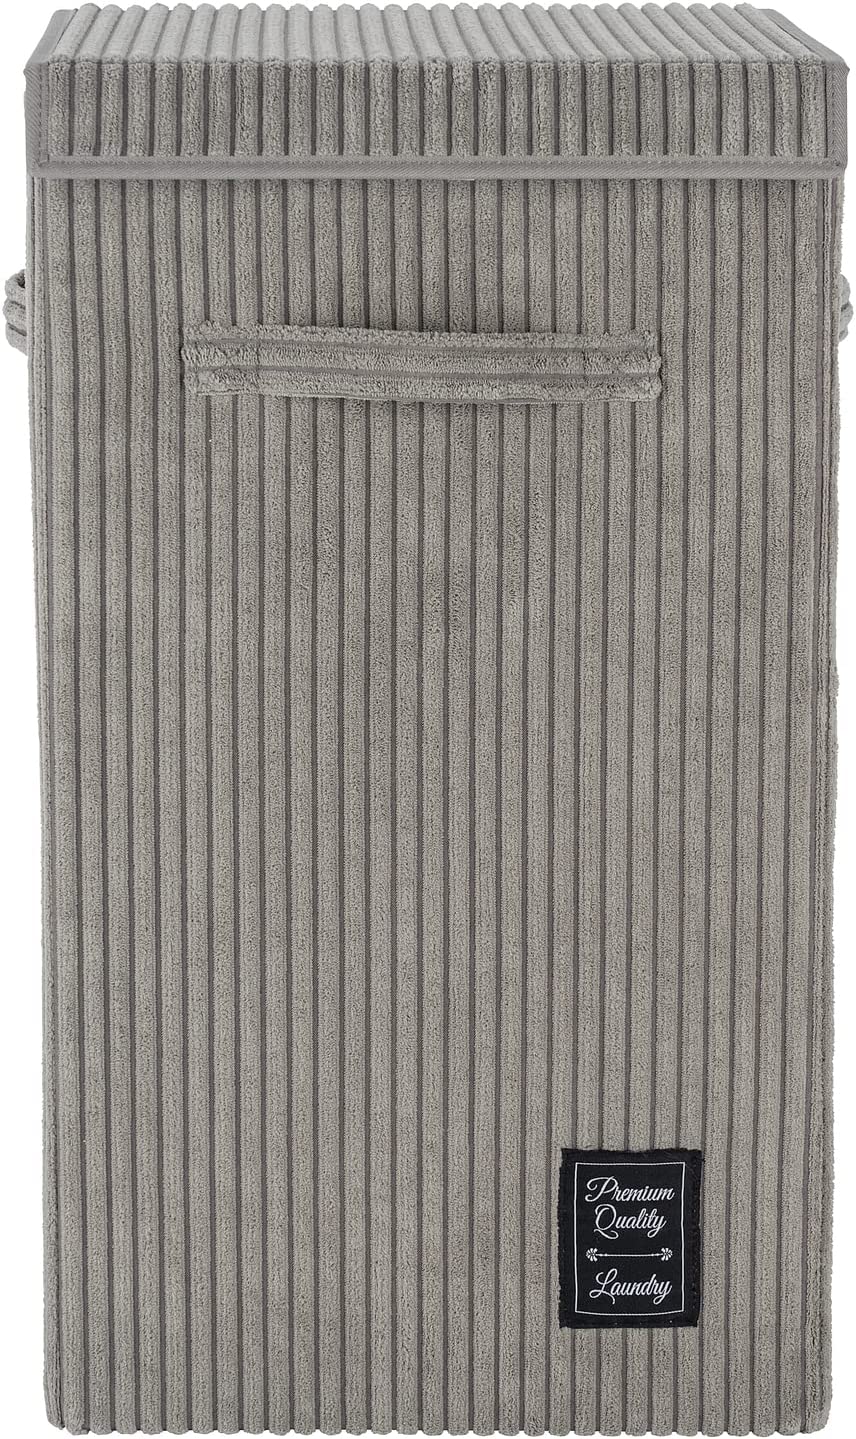 Wäschesammler Cora Grau, moderner Wäschekorb aus flauschigen Cord, mit Klettverschluss-Deckel und 3 Tragegriffen, 63 Liter Fassungsvermögen, 33 x 58 x 33 cm, 100% Polyester